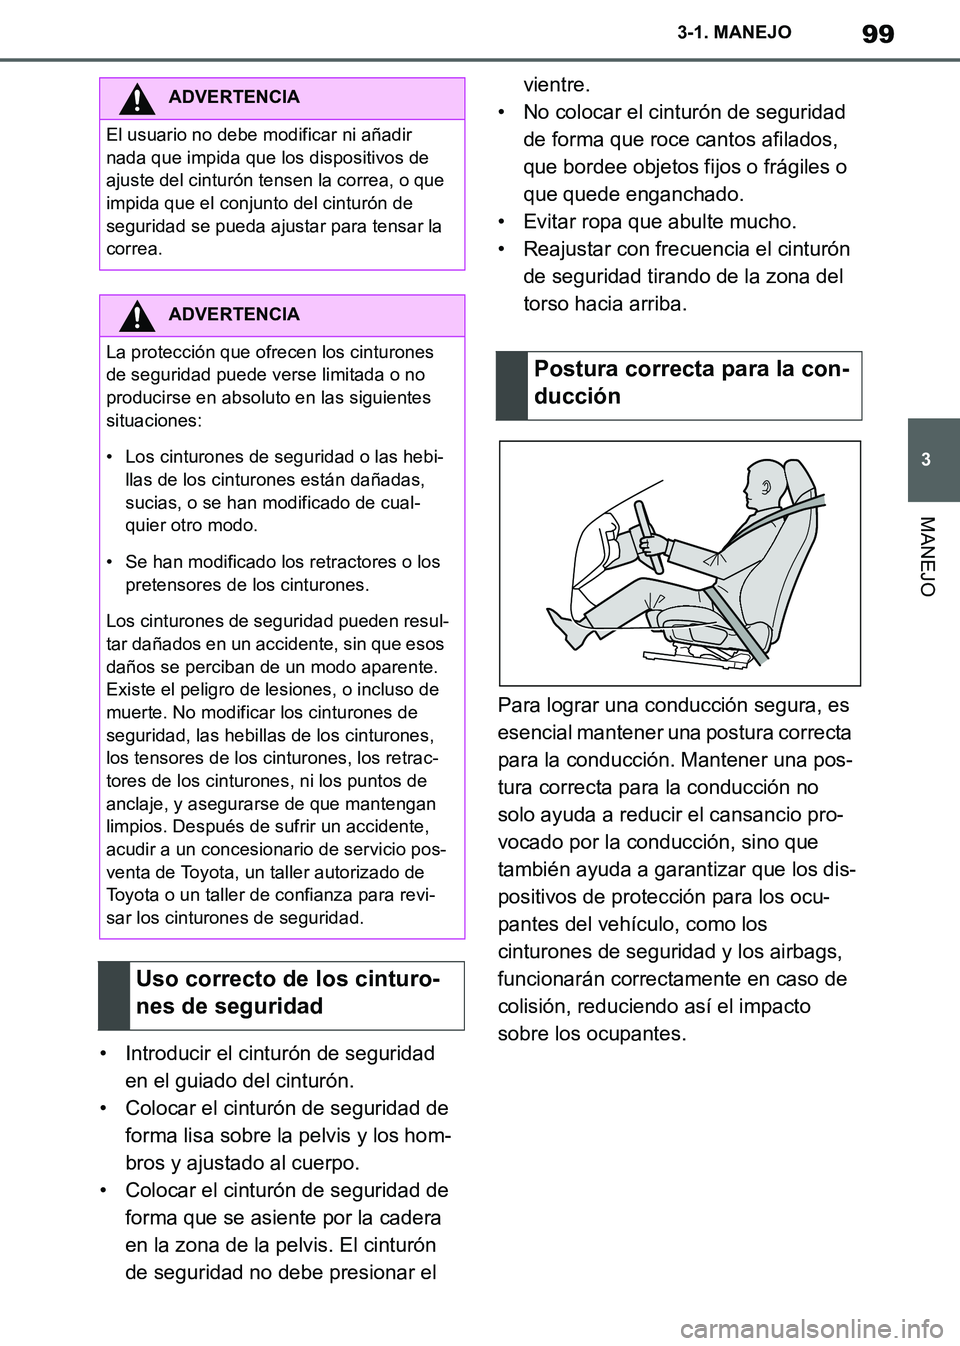 TOYOTA SUPRA 2019  Manuale de Empleo (in Spanish) 99
3
Supra Owners Manual_ES
3-1. MANEJO
MANEJO
• Introducir el cinturón de seguridad 
en el guiado del cinturón.
• Colocar el cinturón de seguridad de 
forma lisa sobre la pelvis y los hom-
br